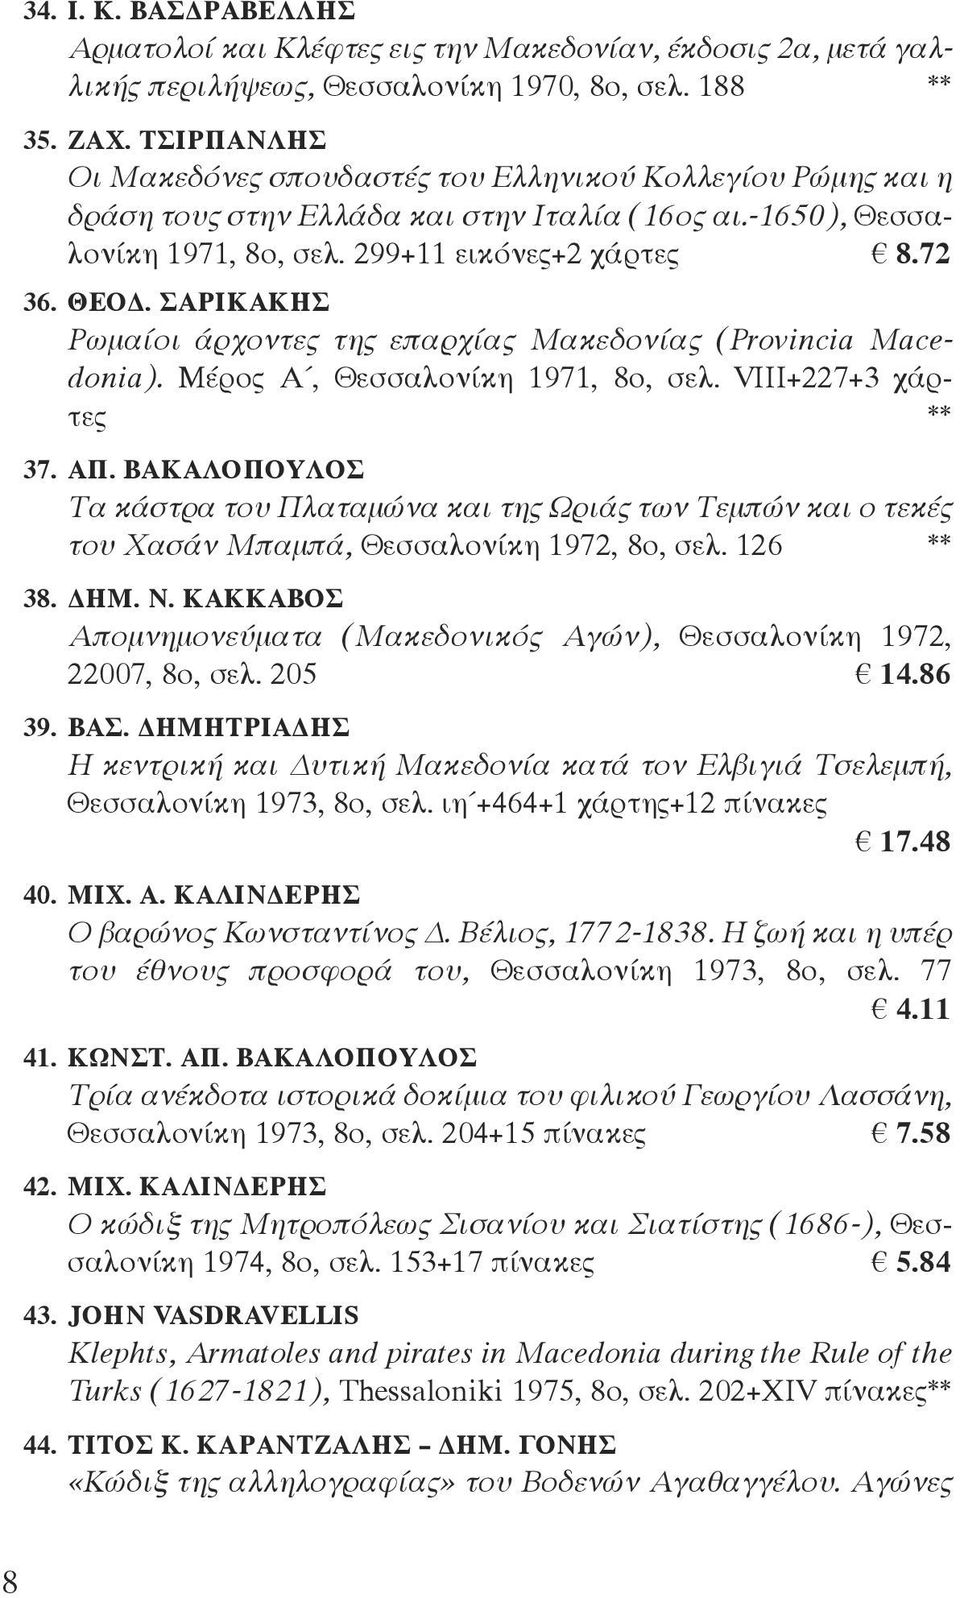 ΣΑΡΙΚΑΚΗΣ Ρωμαίοι άρχοντες της επαρχίας Μακεδονίας (Provincia Macedonia). Μέρος Α, Θεσσαλονίκη 1971, 8ο, σελ. VIII+227+3 χάρτες ** 37. ΑΠ.